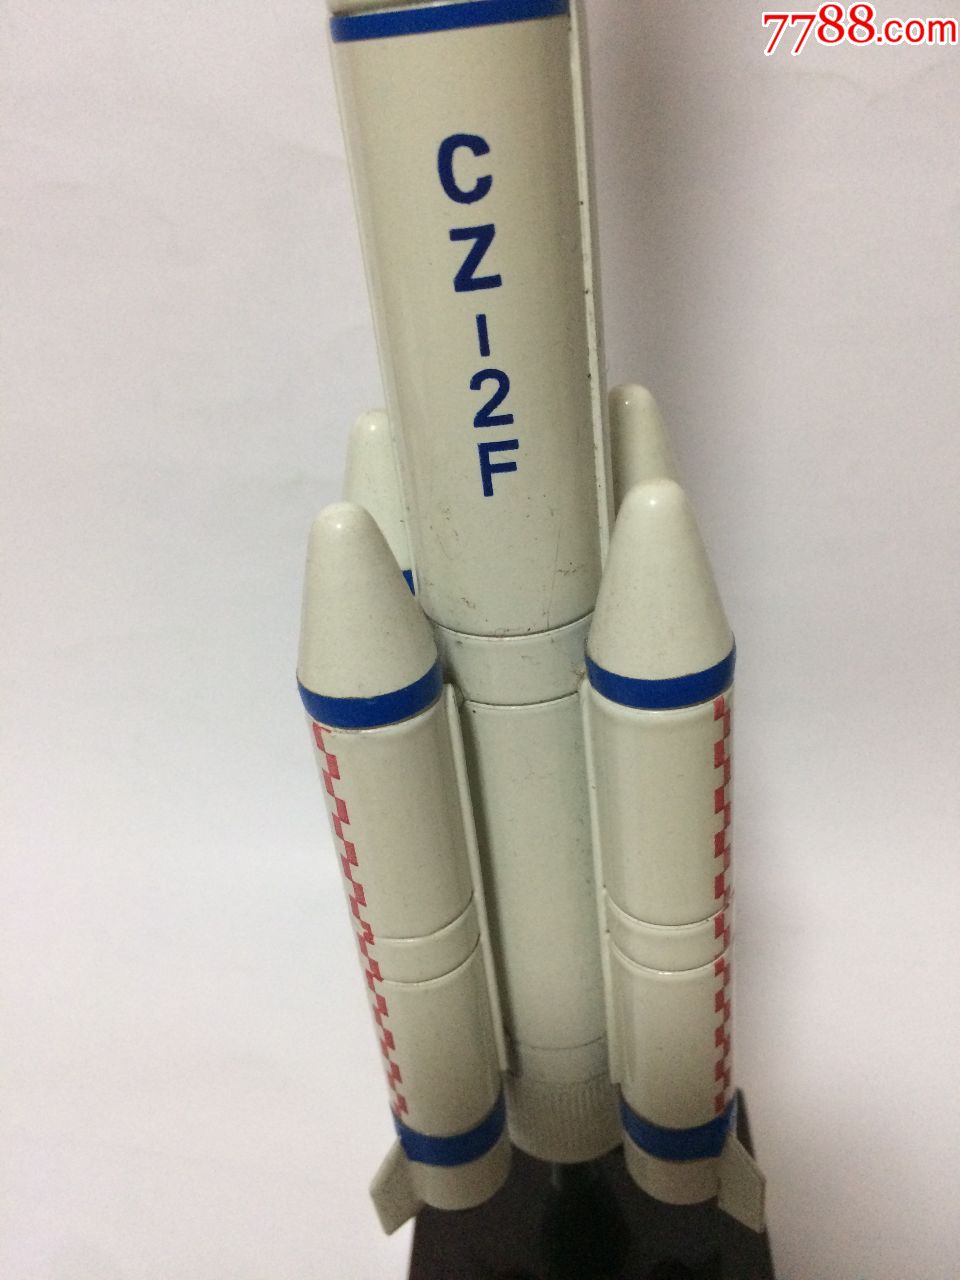 发射神舟载人飞船火箭纪念模型_飞机/航天模型_收藏小